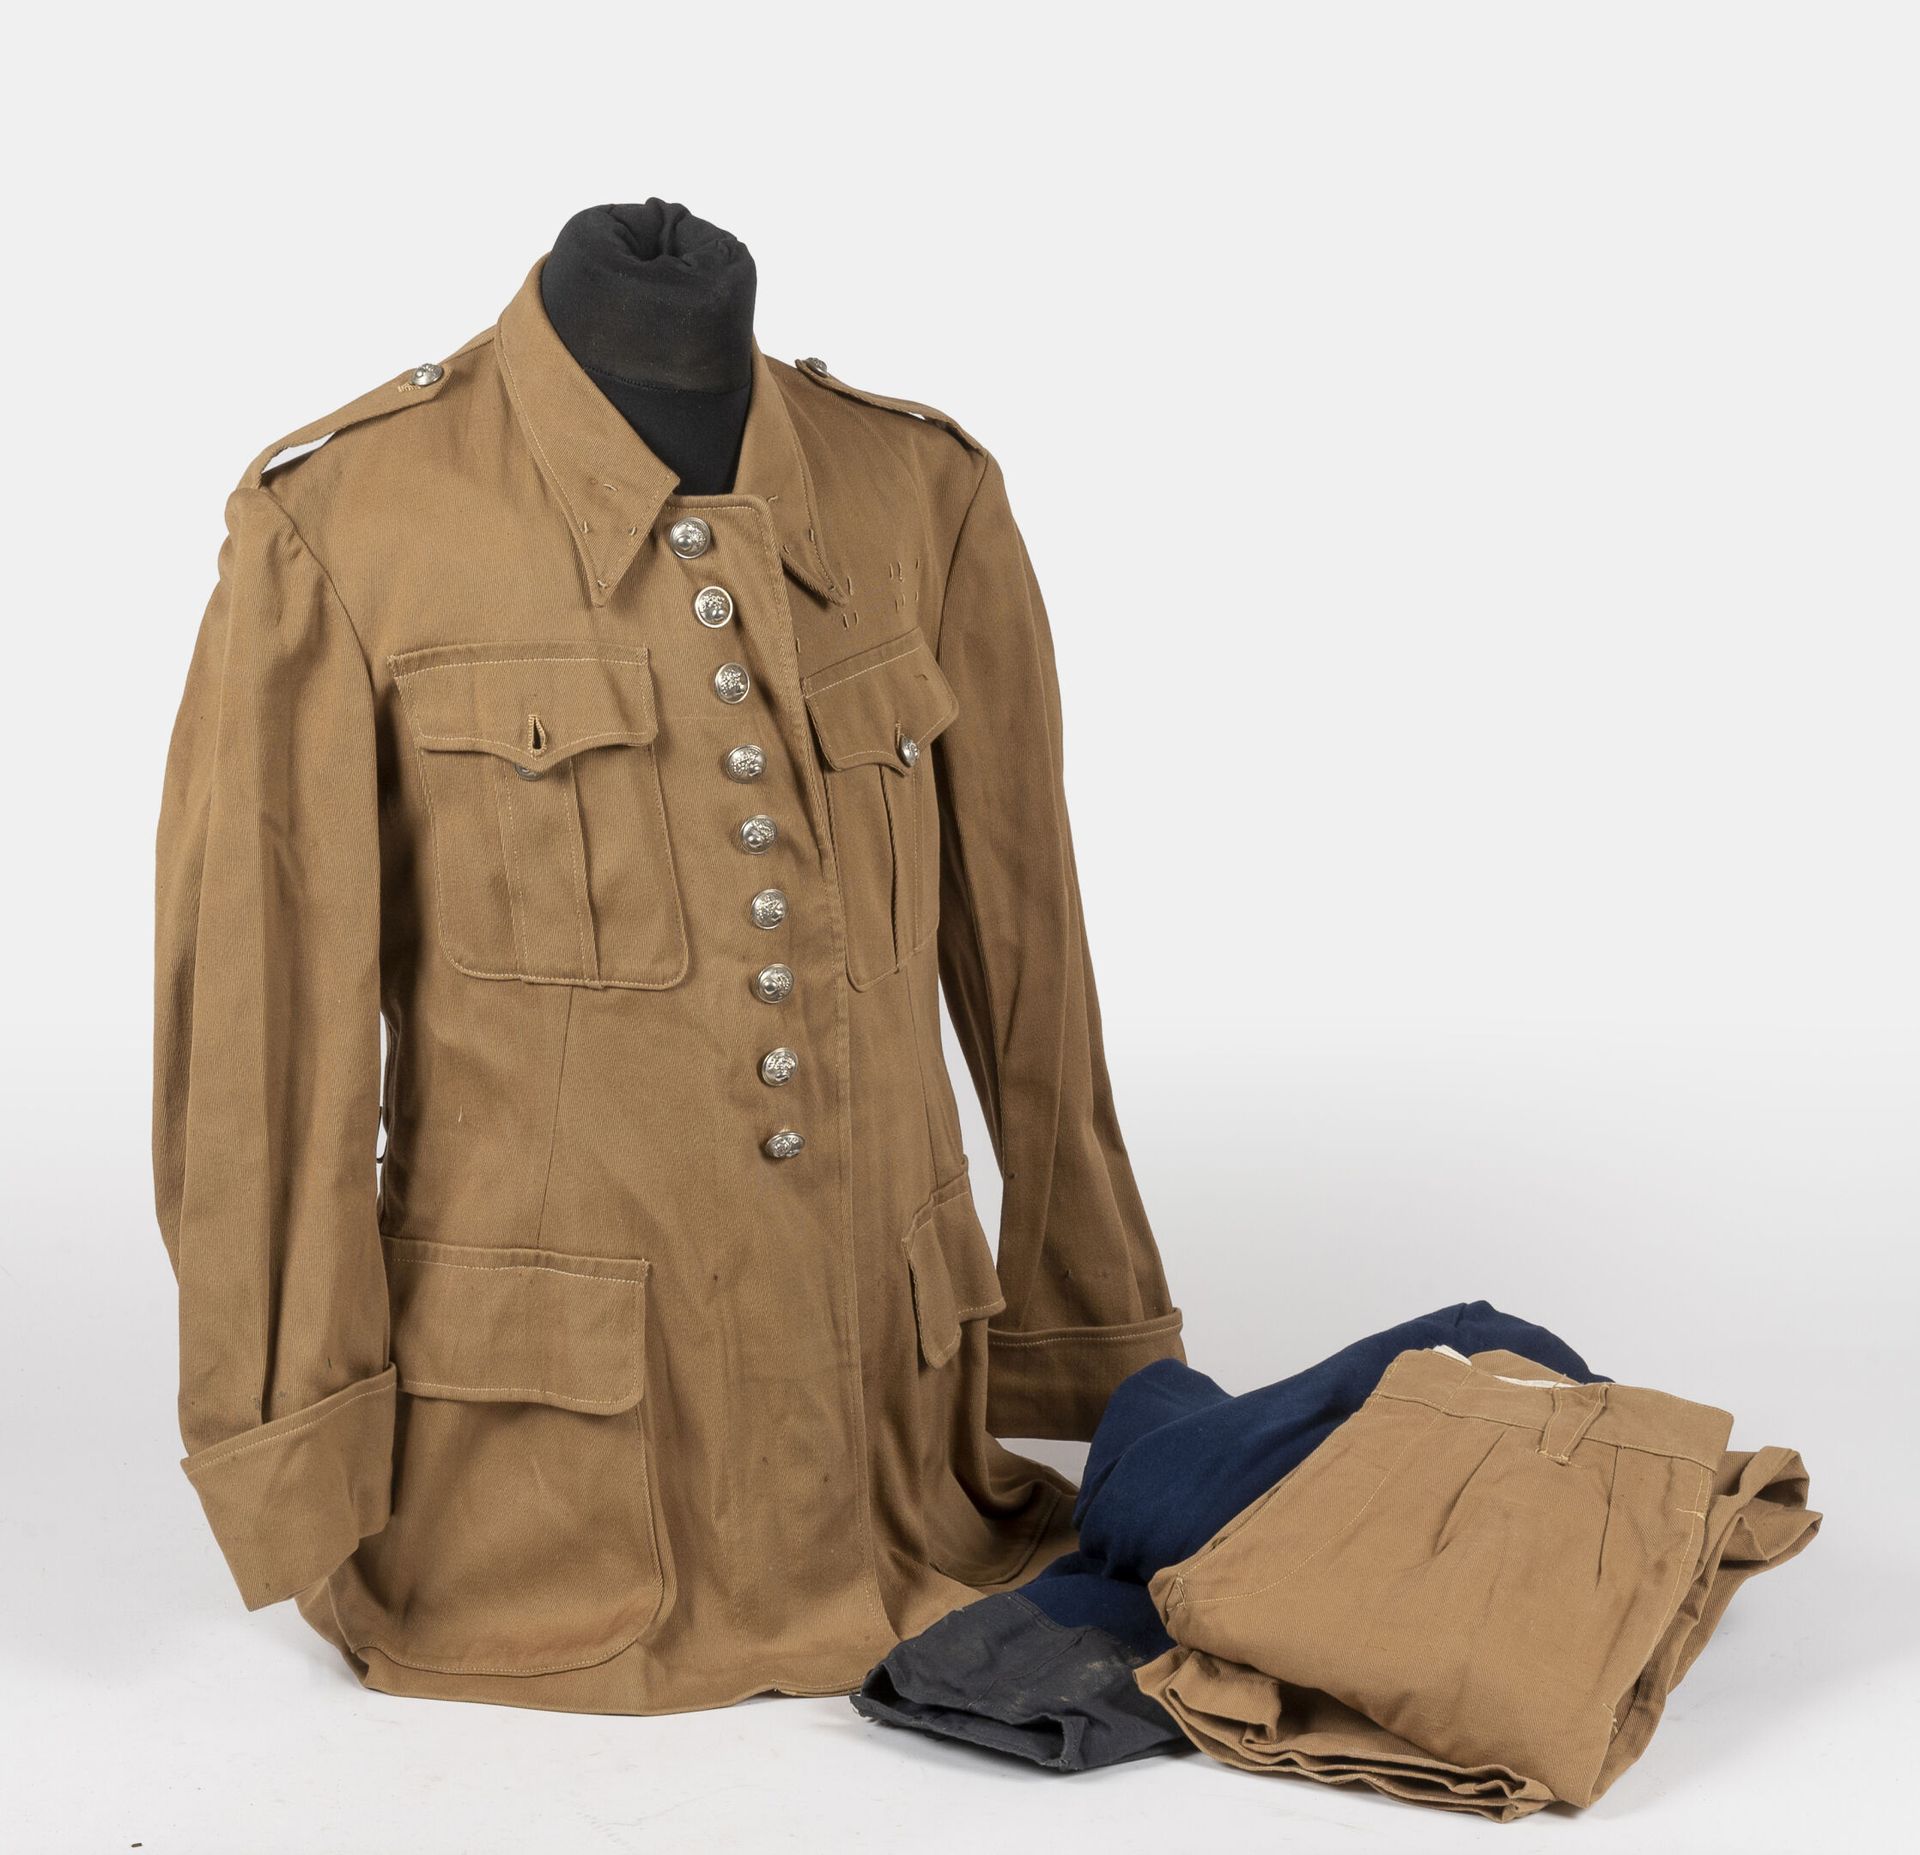 Null 宪兵制服，米色帆布的夏季服装，包括外套和带白色手榴弹按钮的长裤。

状况良好，附有一条摩托车宪兵的马裤。